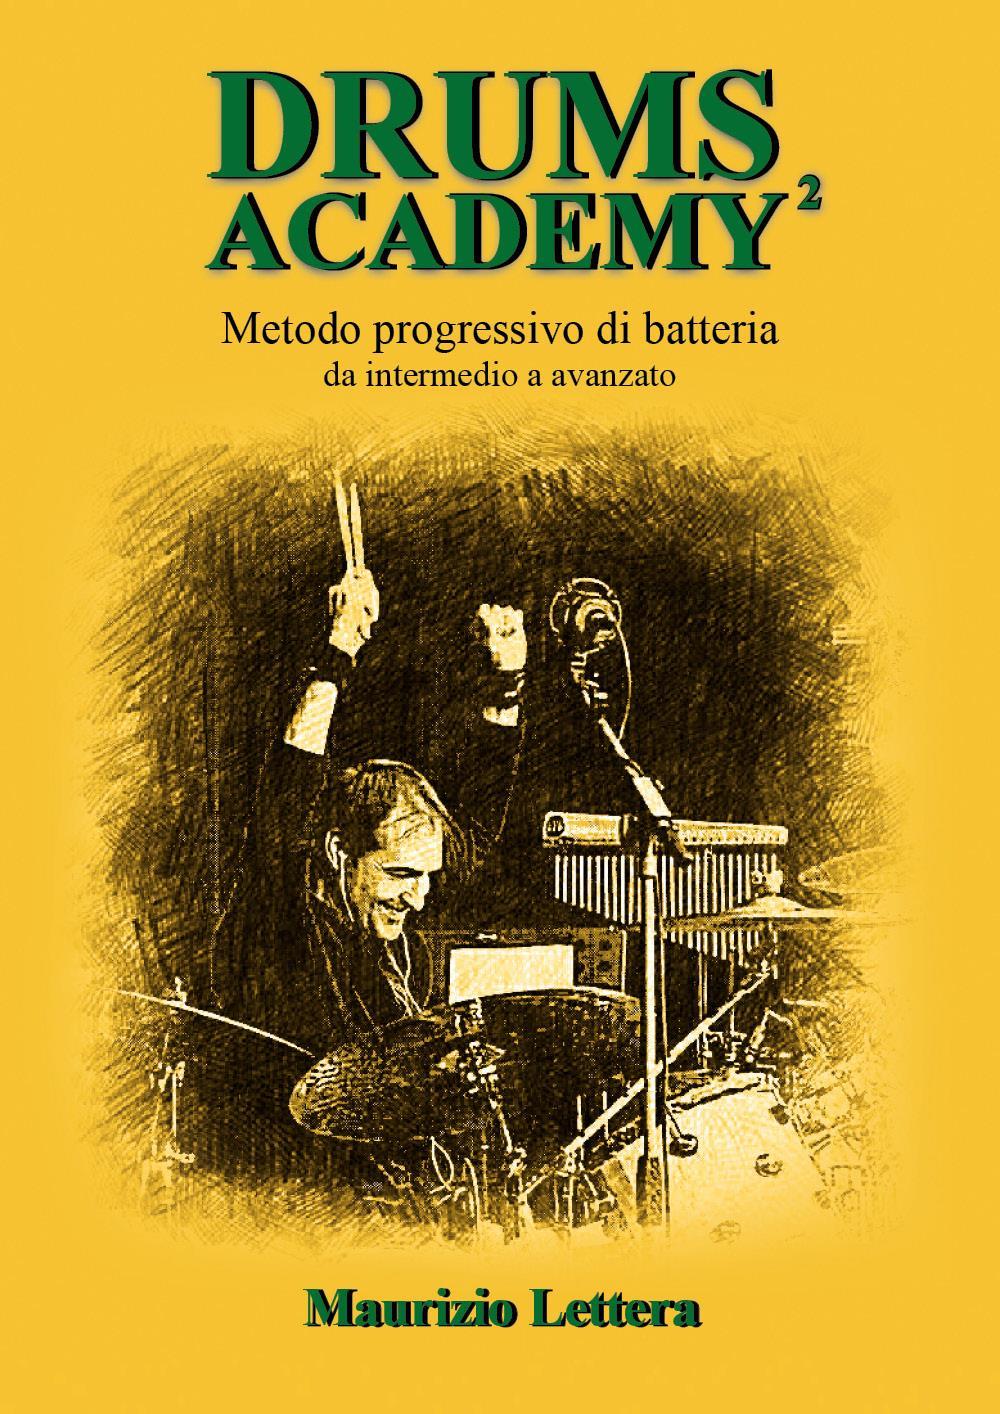 Drums Academy² - Metodo progressivo di batteria - Da intermedio a avanzato